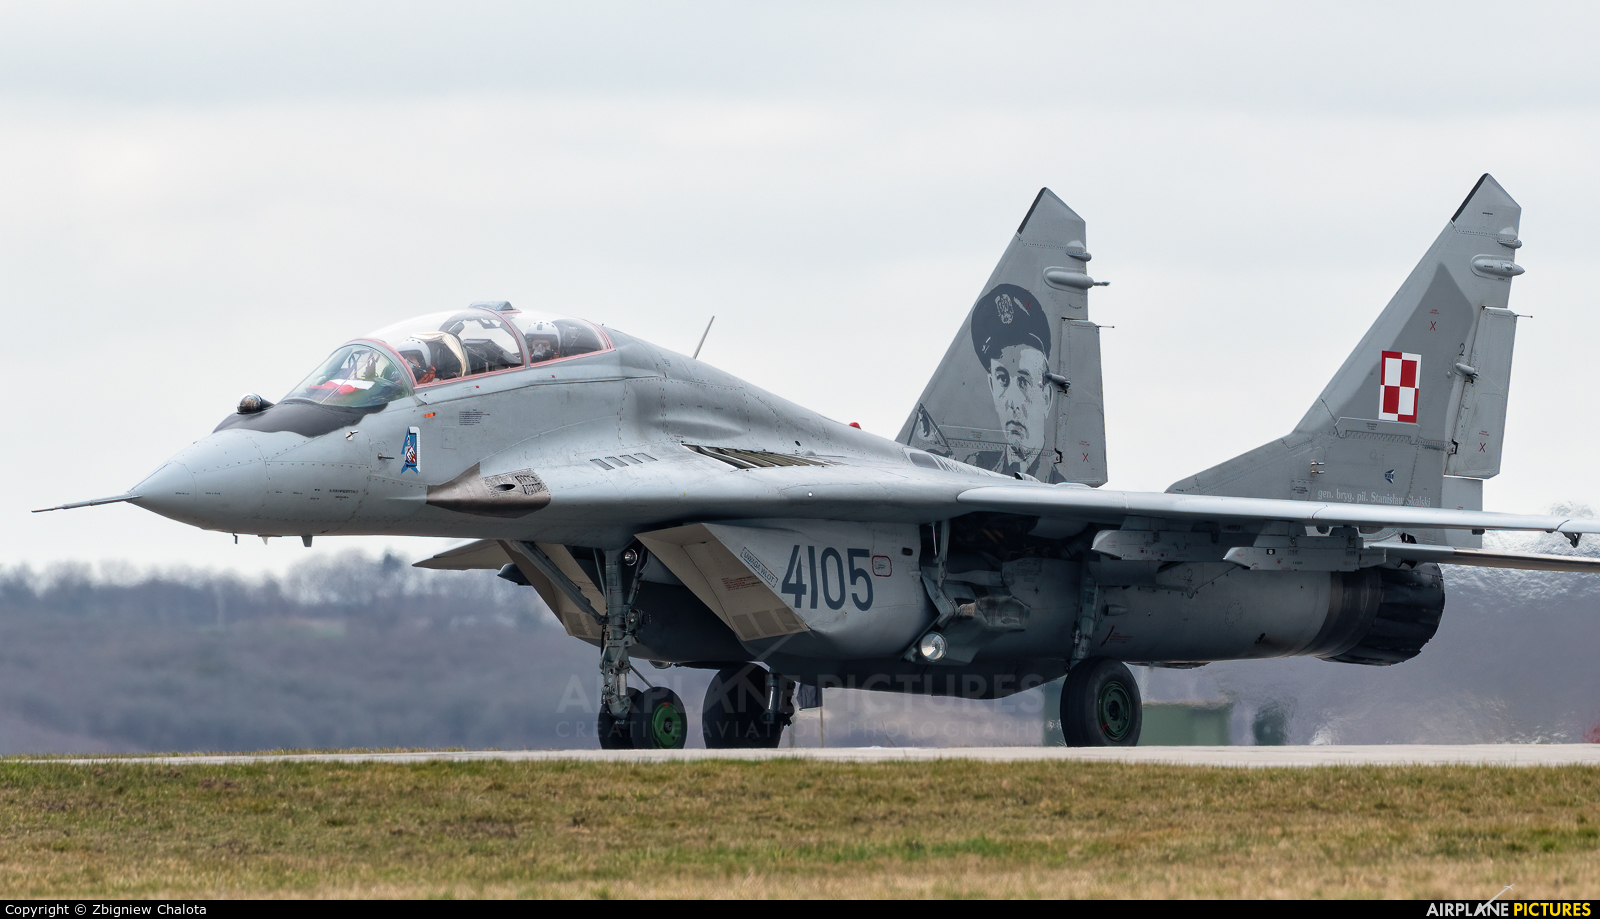 Poland - Air Force 4105 aircraft at Malbork